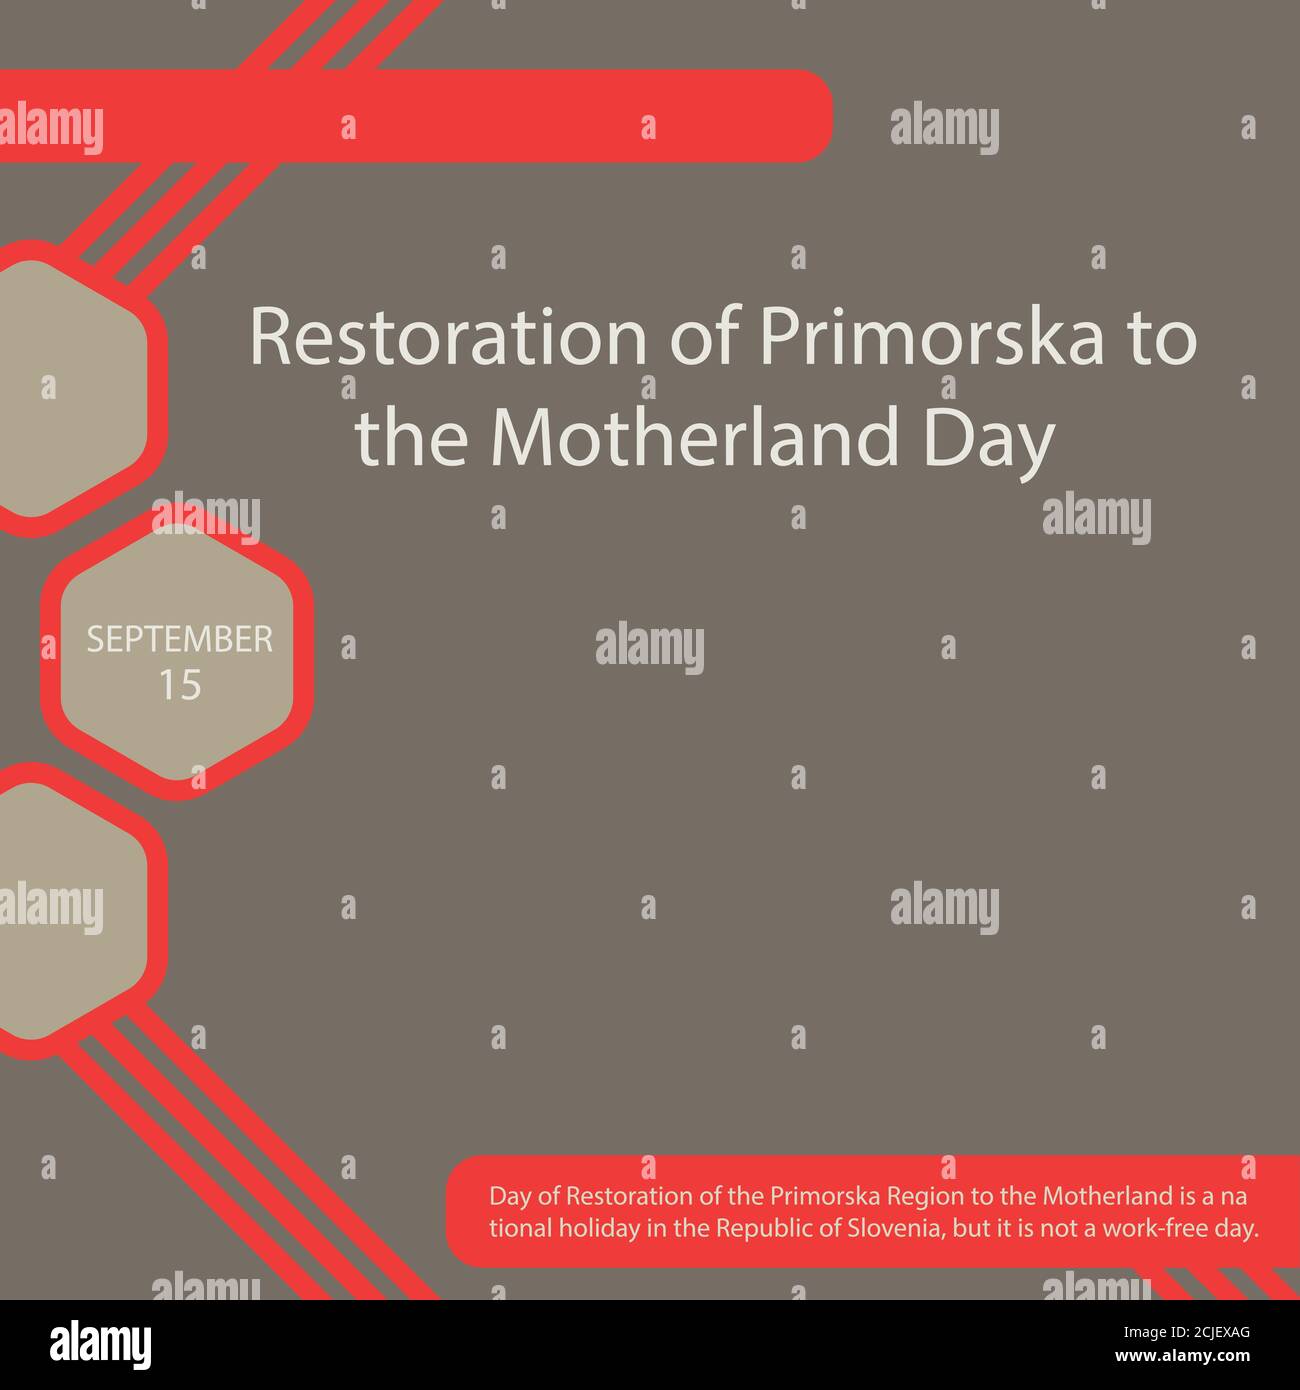 Il giorno del Restauro della Regione Primorska alla Patria è una festa nazionale nella Repubblica di Slovenia, ma non è un giorno libero dal lavoro. Illustrazione Vettoriale